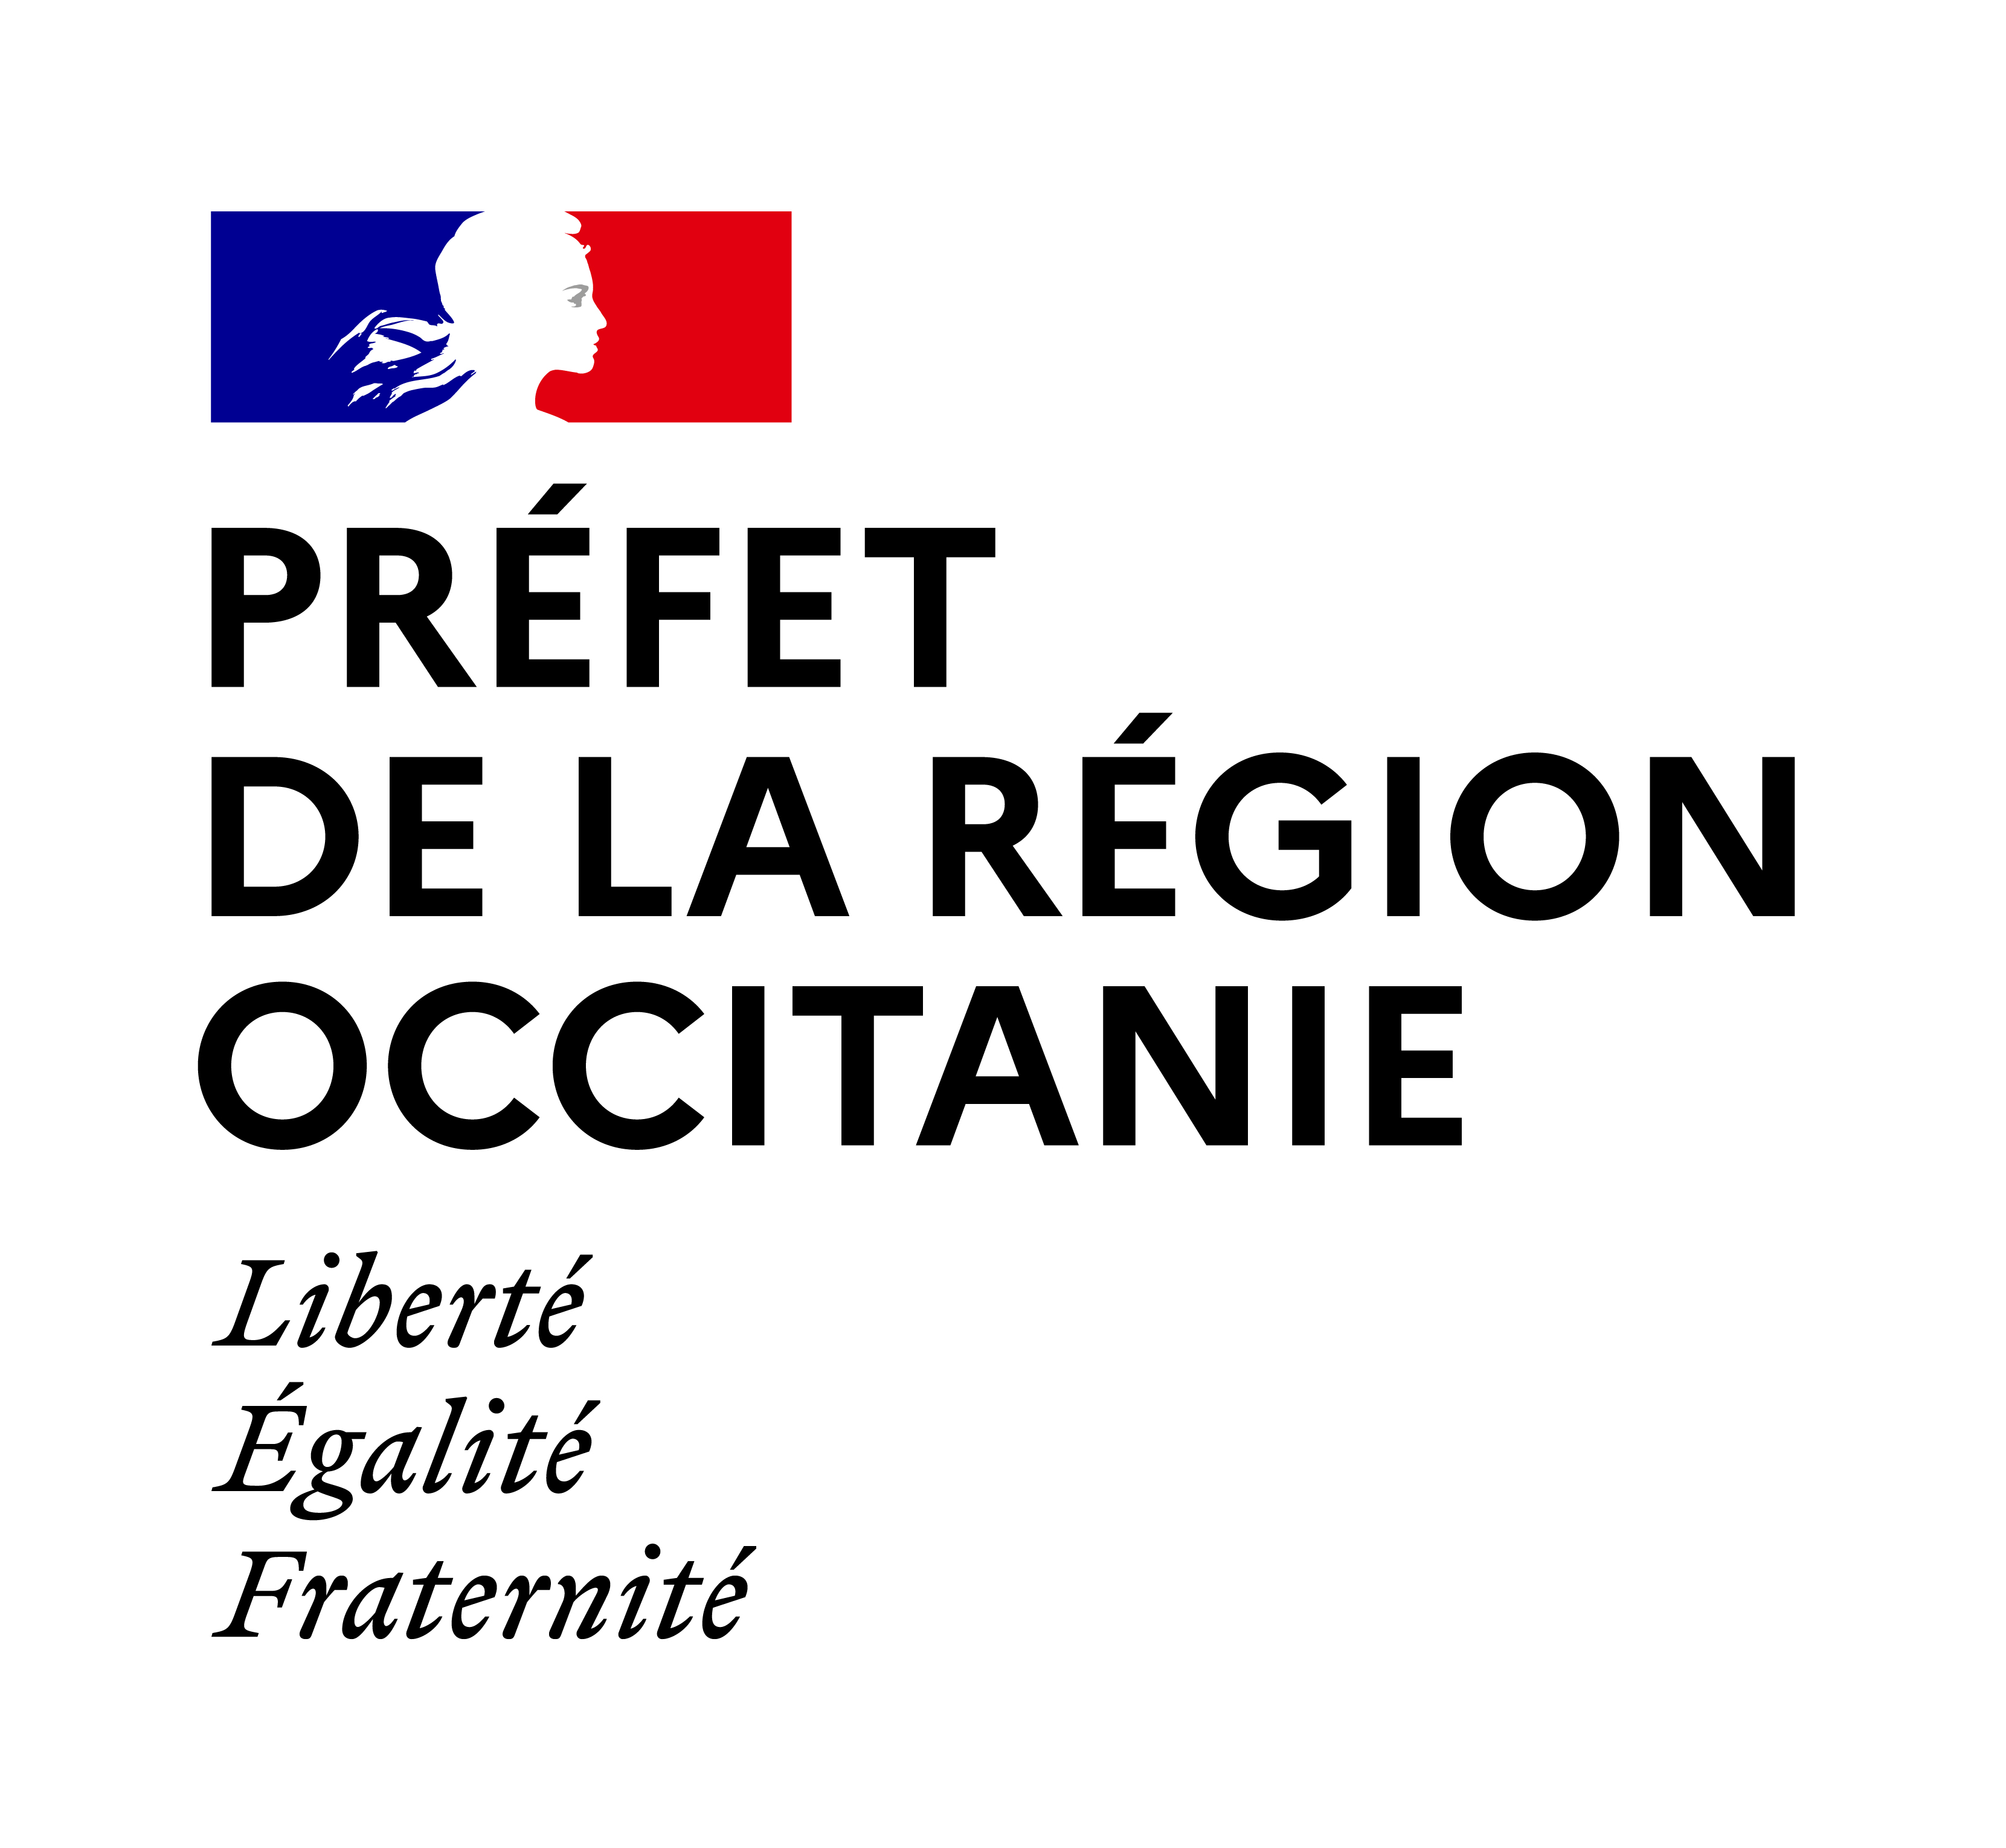 Préfet de région occitanie